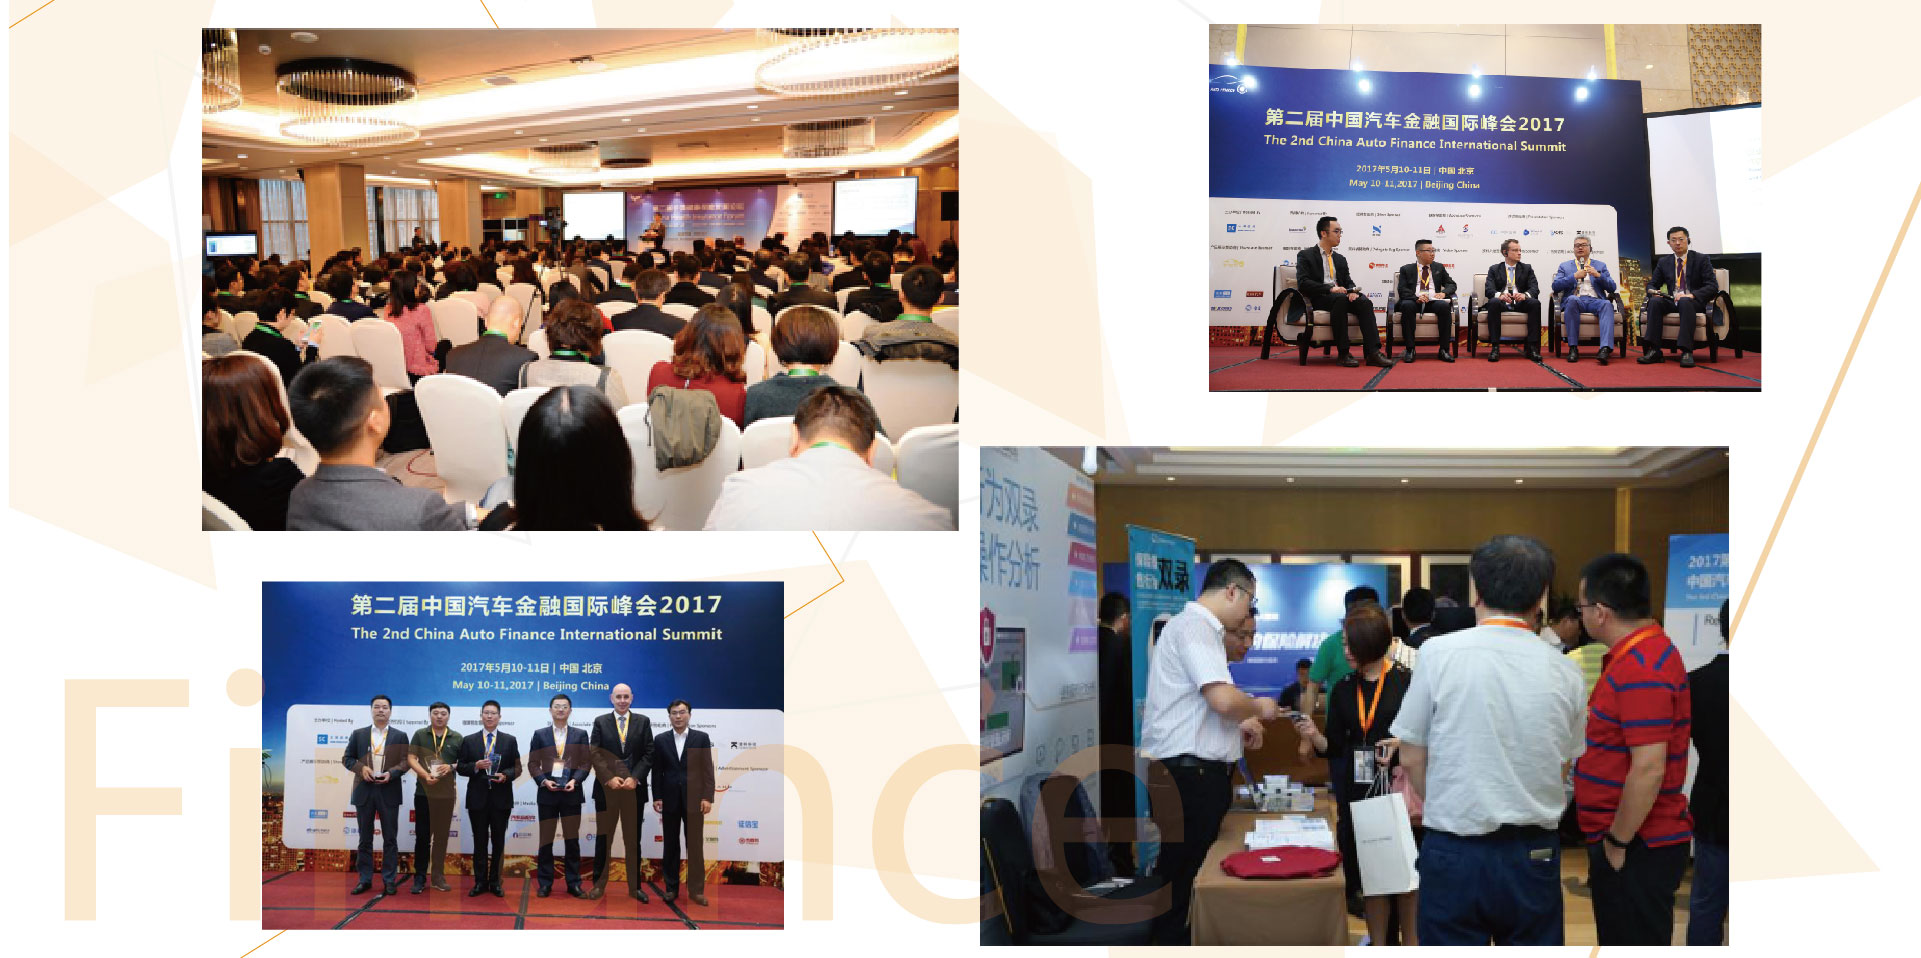 2018第三届中国汽车金融国际峰会